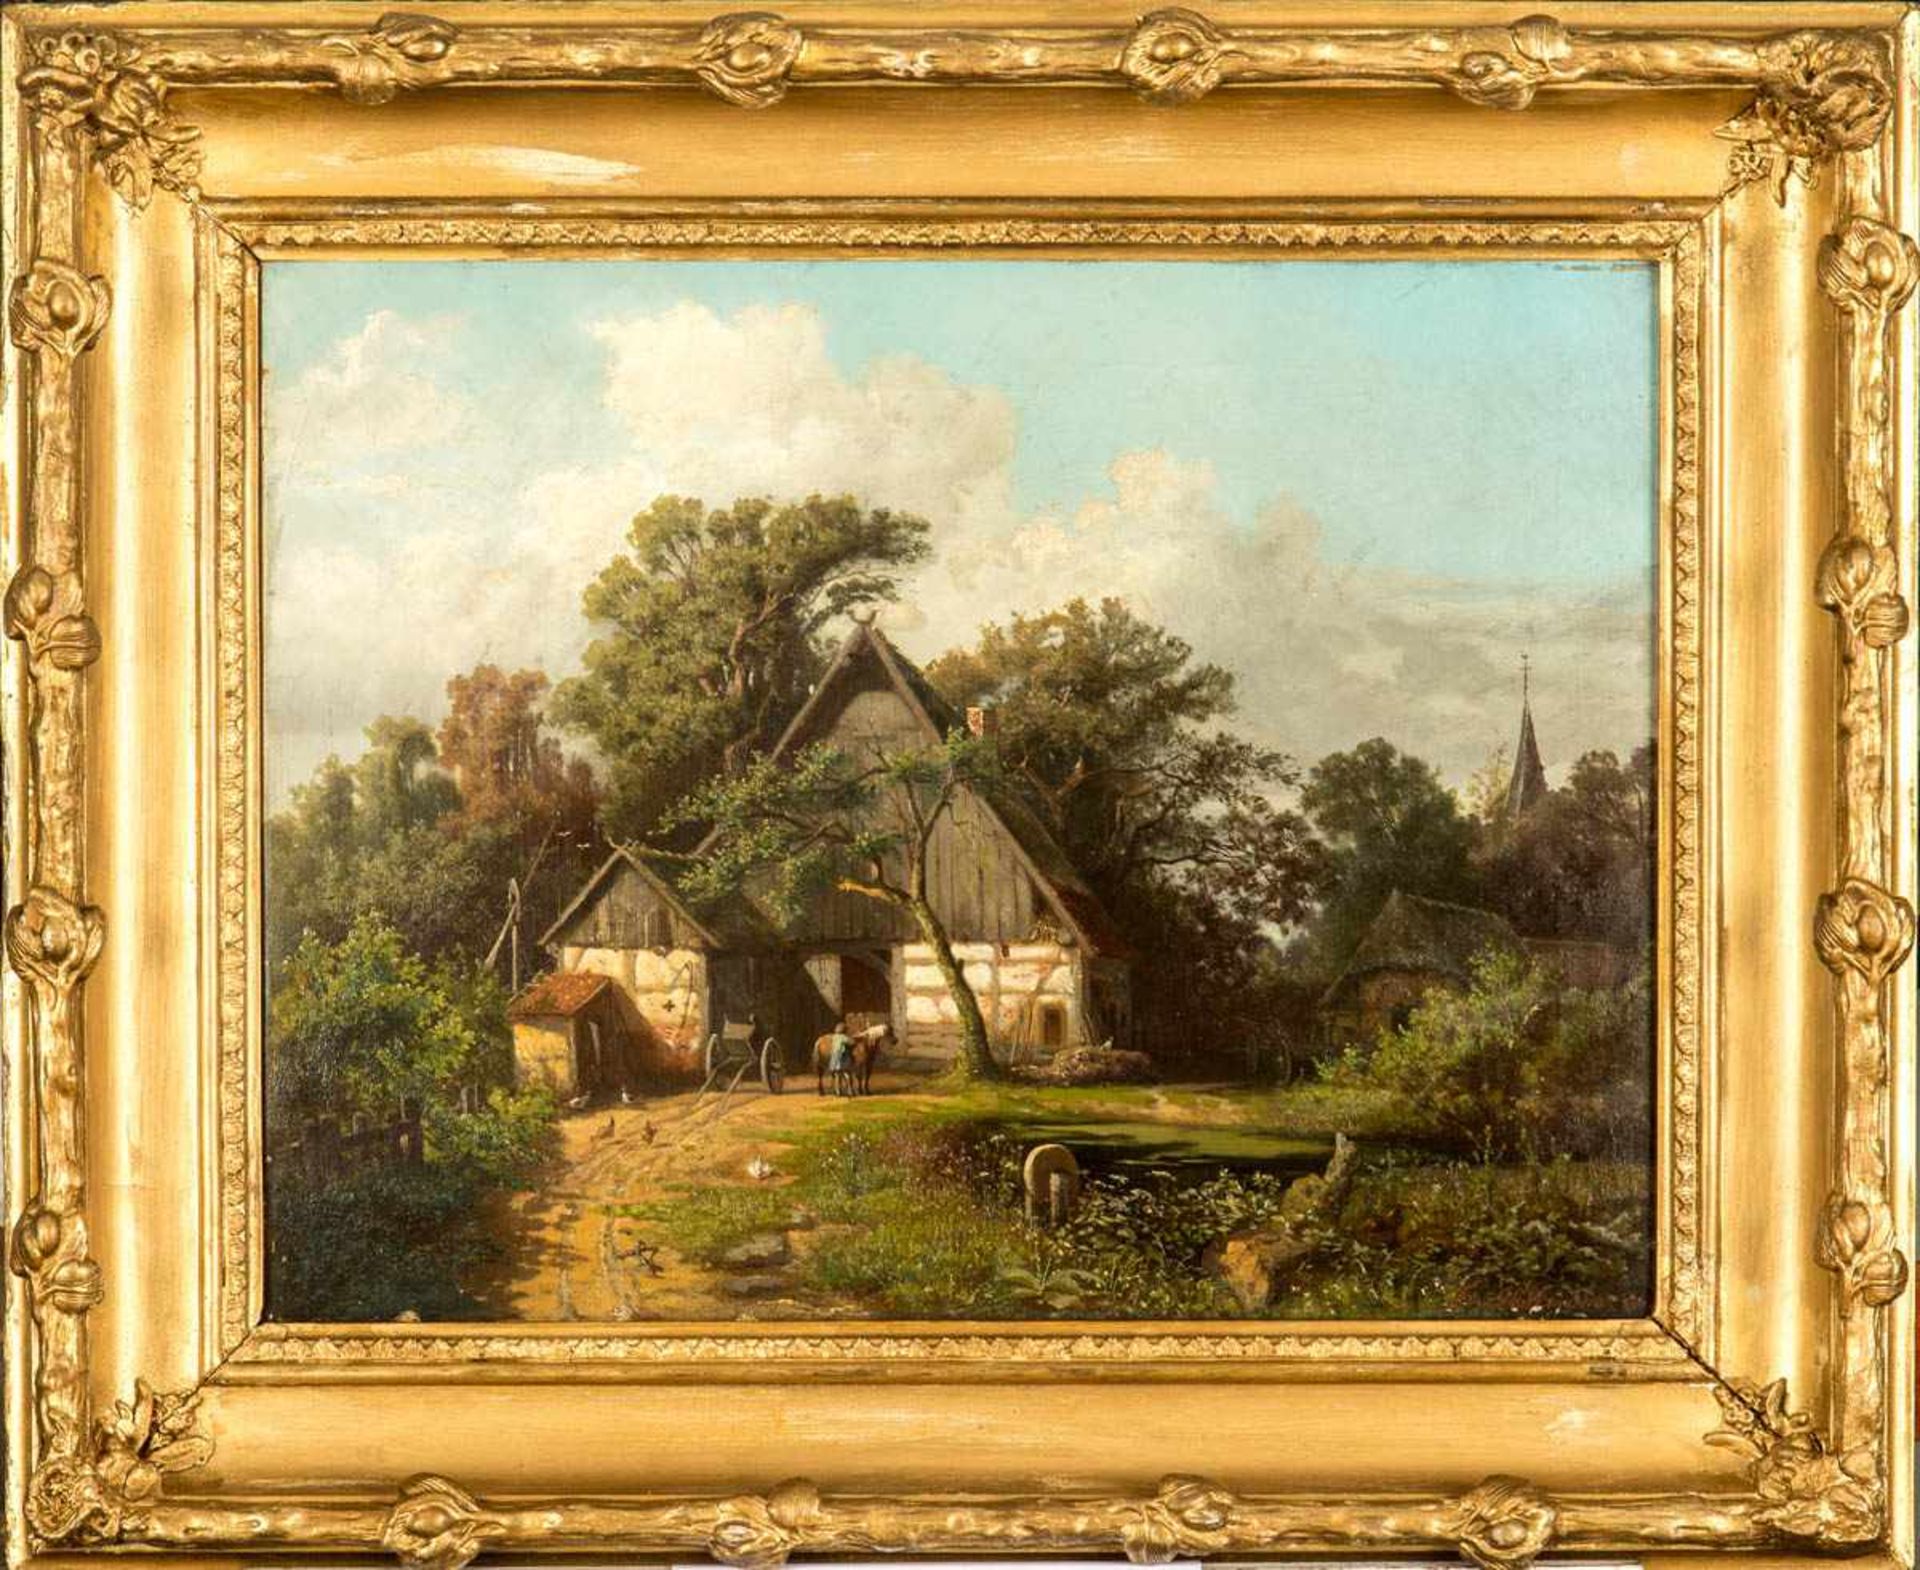 Holtmann, Th. Bauernhaus mit Federvieh am Dorfrand, 1856, Öl auf Leinwand, 44 x 58 cm, im Himmel